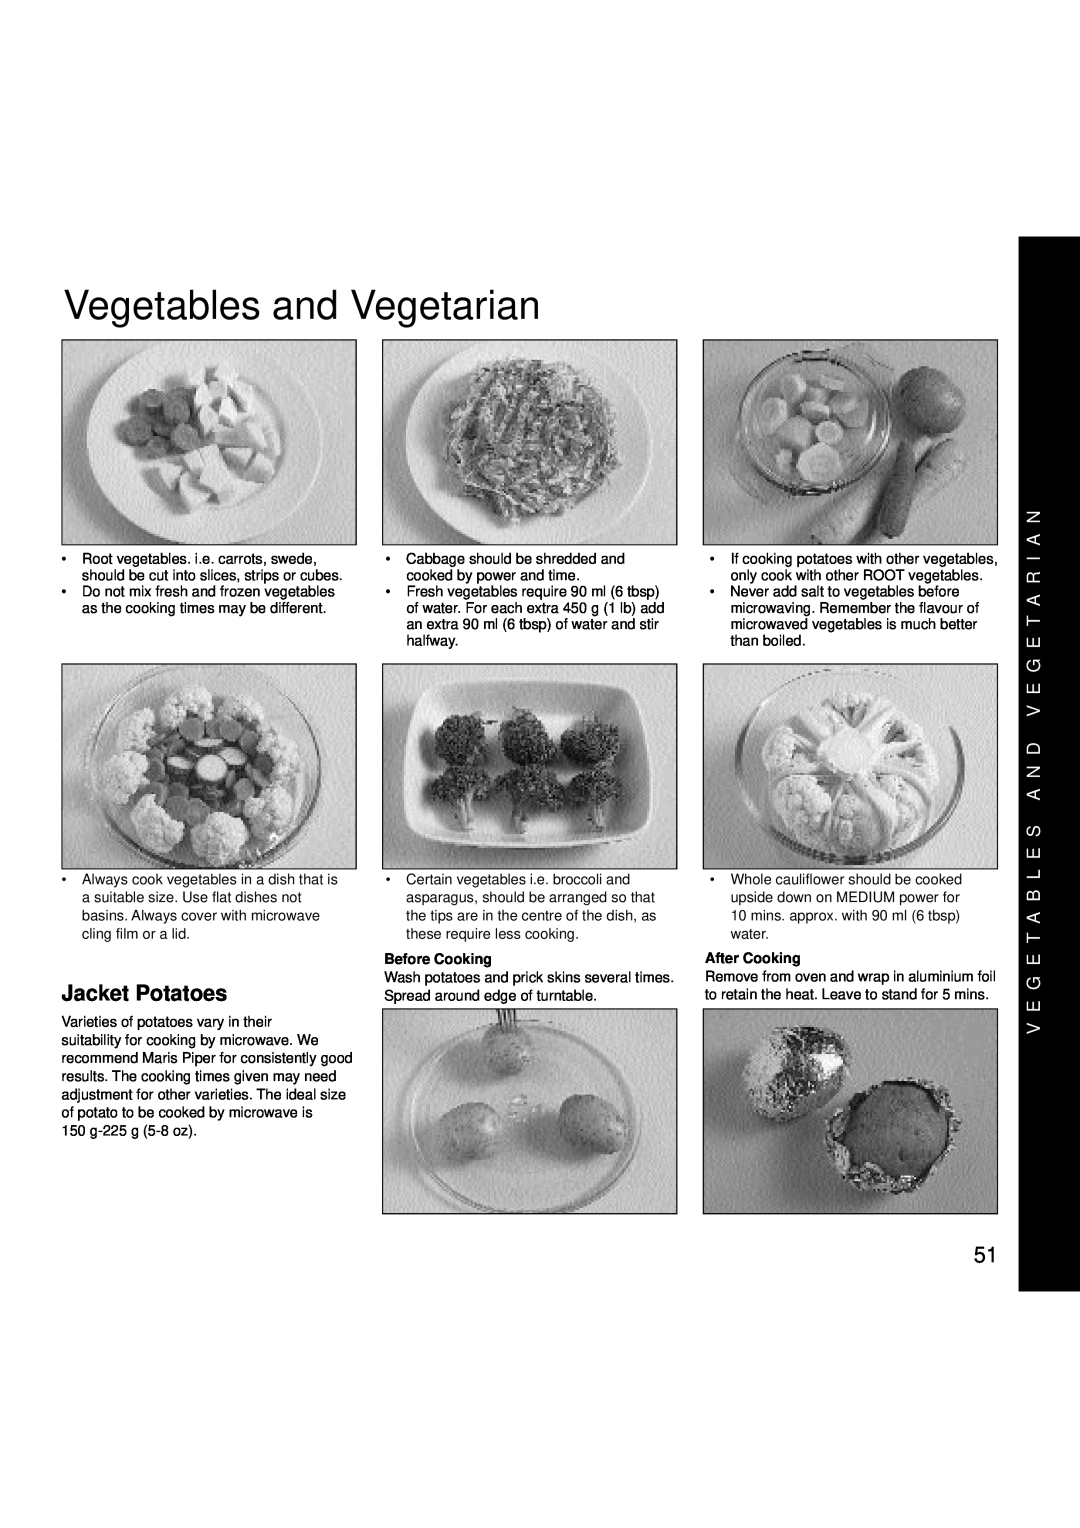 Creda MBO55 Vegetables and Vegetarian, Jacket Potatoes, V E G E T A B L E S A N D V E G E T A R I A N, Before Cooking 